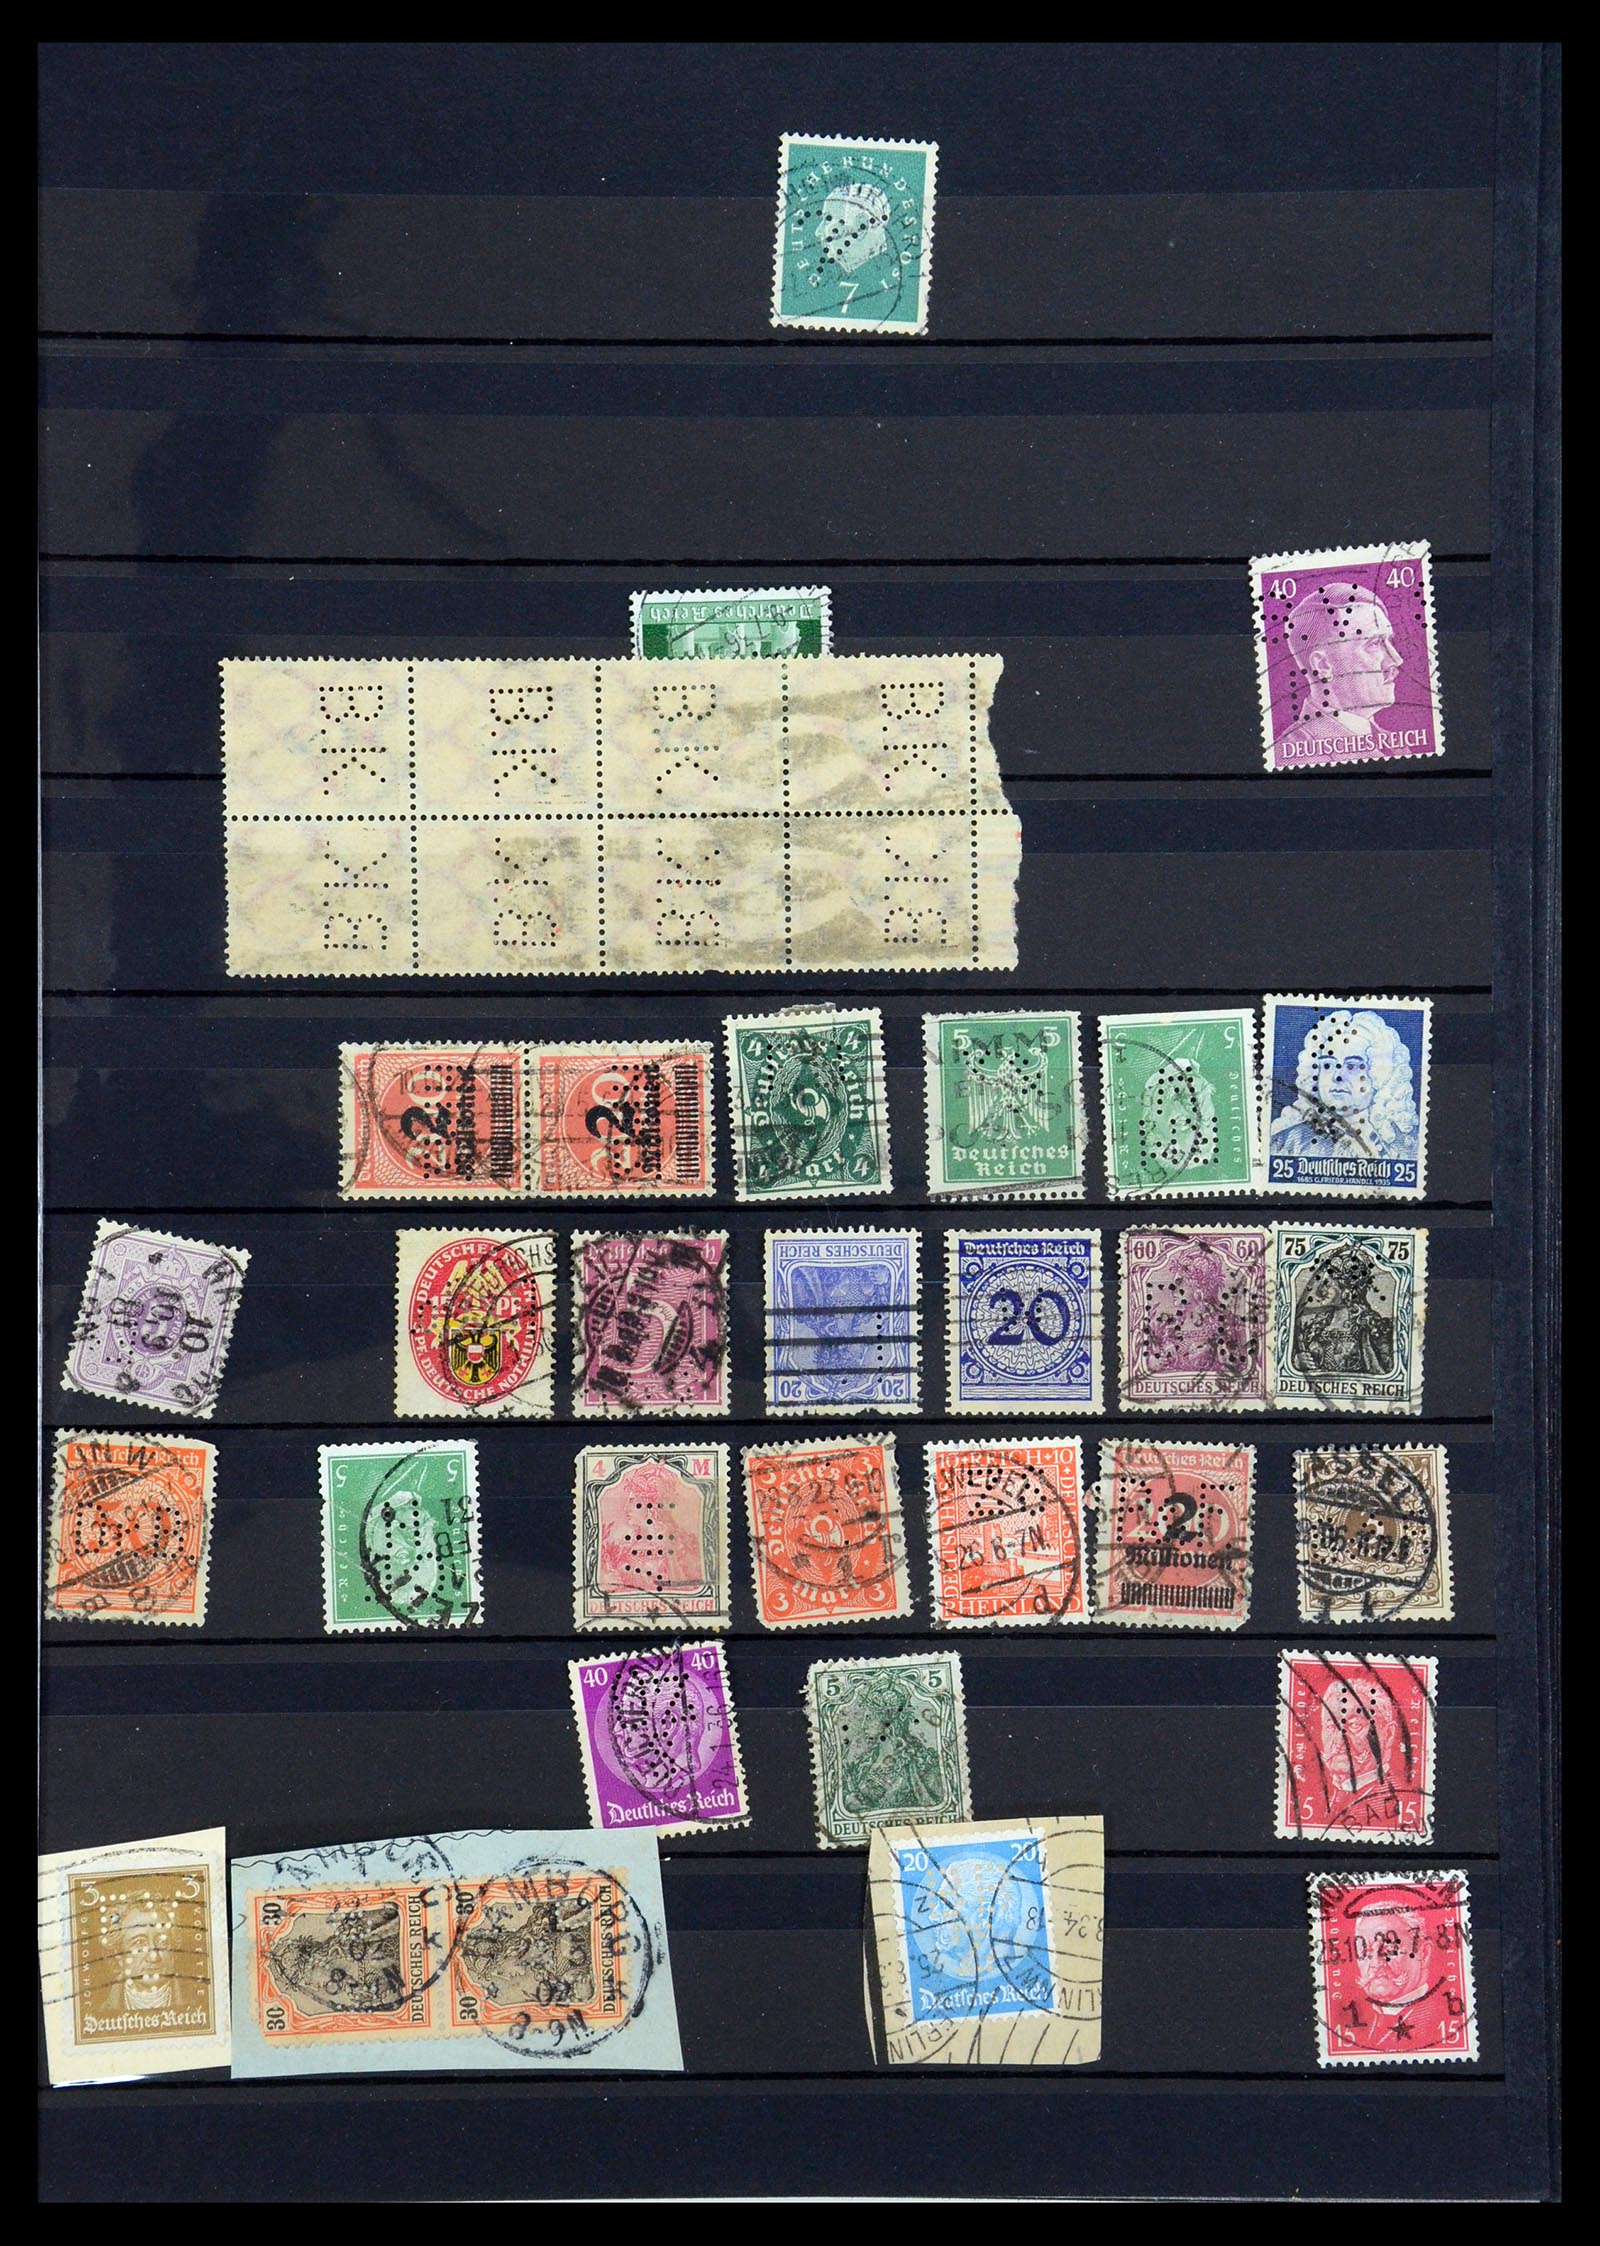 35183 031 - Stamp Collection 35183 German Reich perfins 1880-1945.